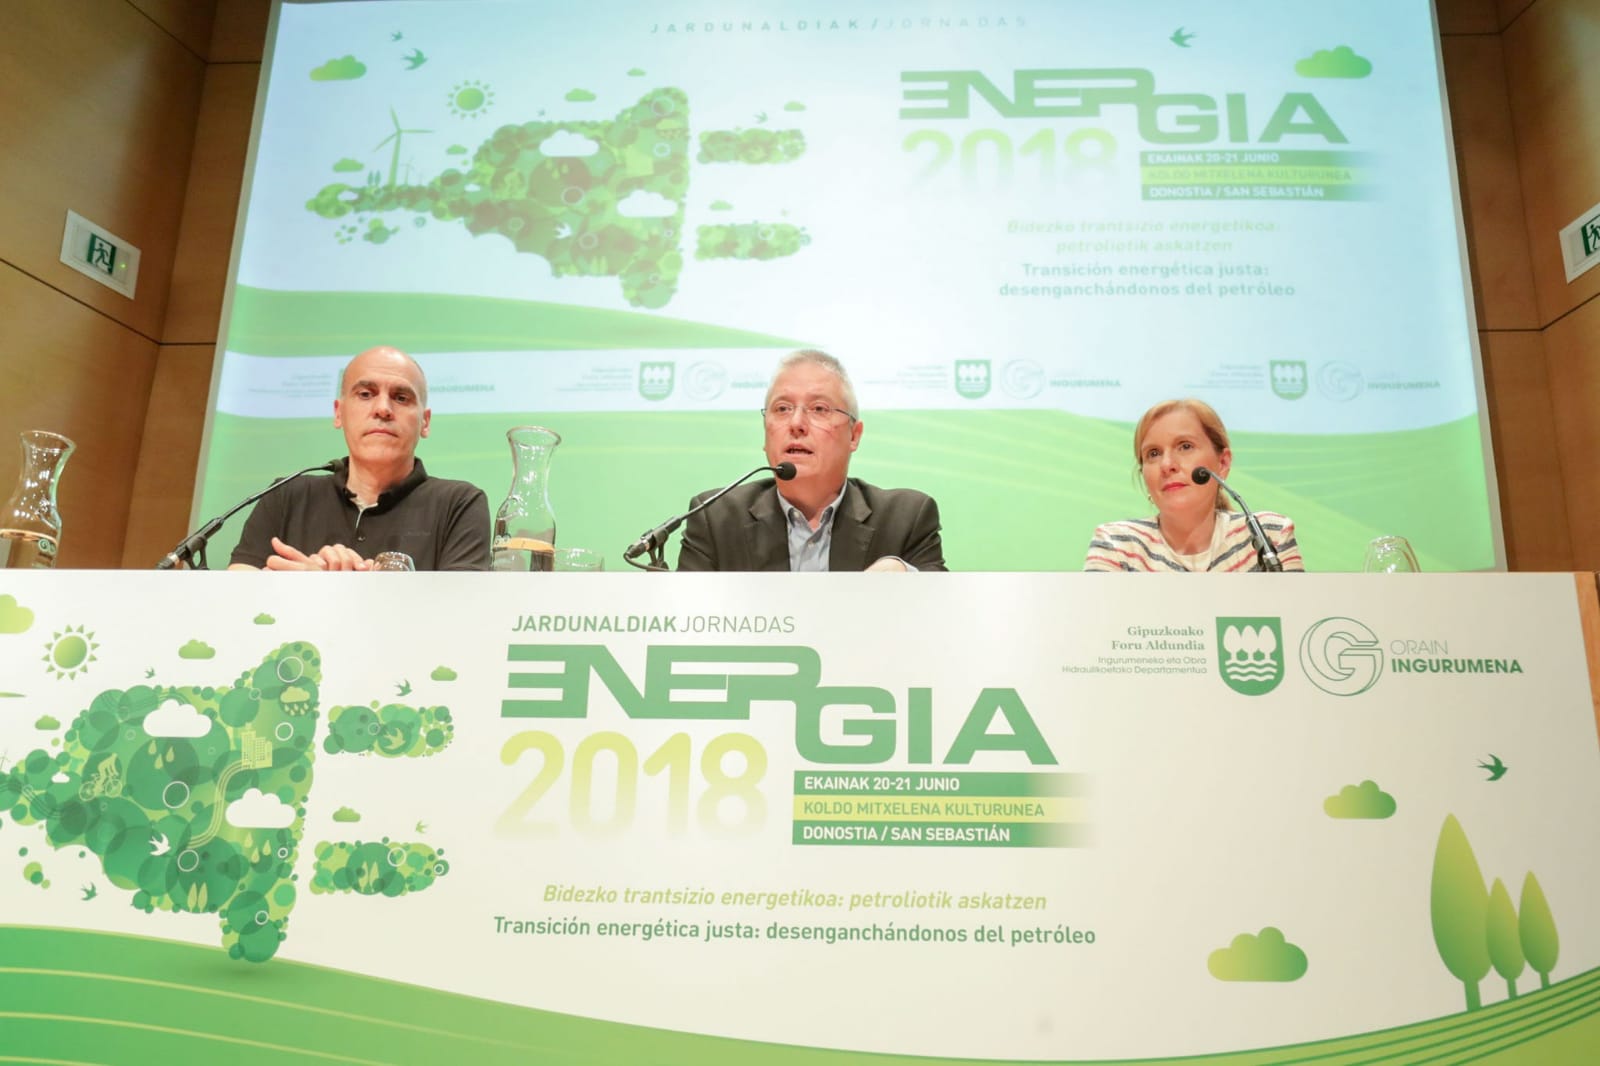 Las Jornadas de Energía analizarán cómo abordar la transición energética en Gipuzkoa